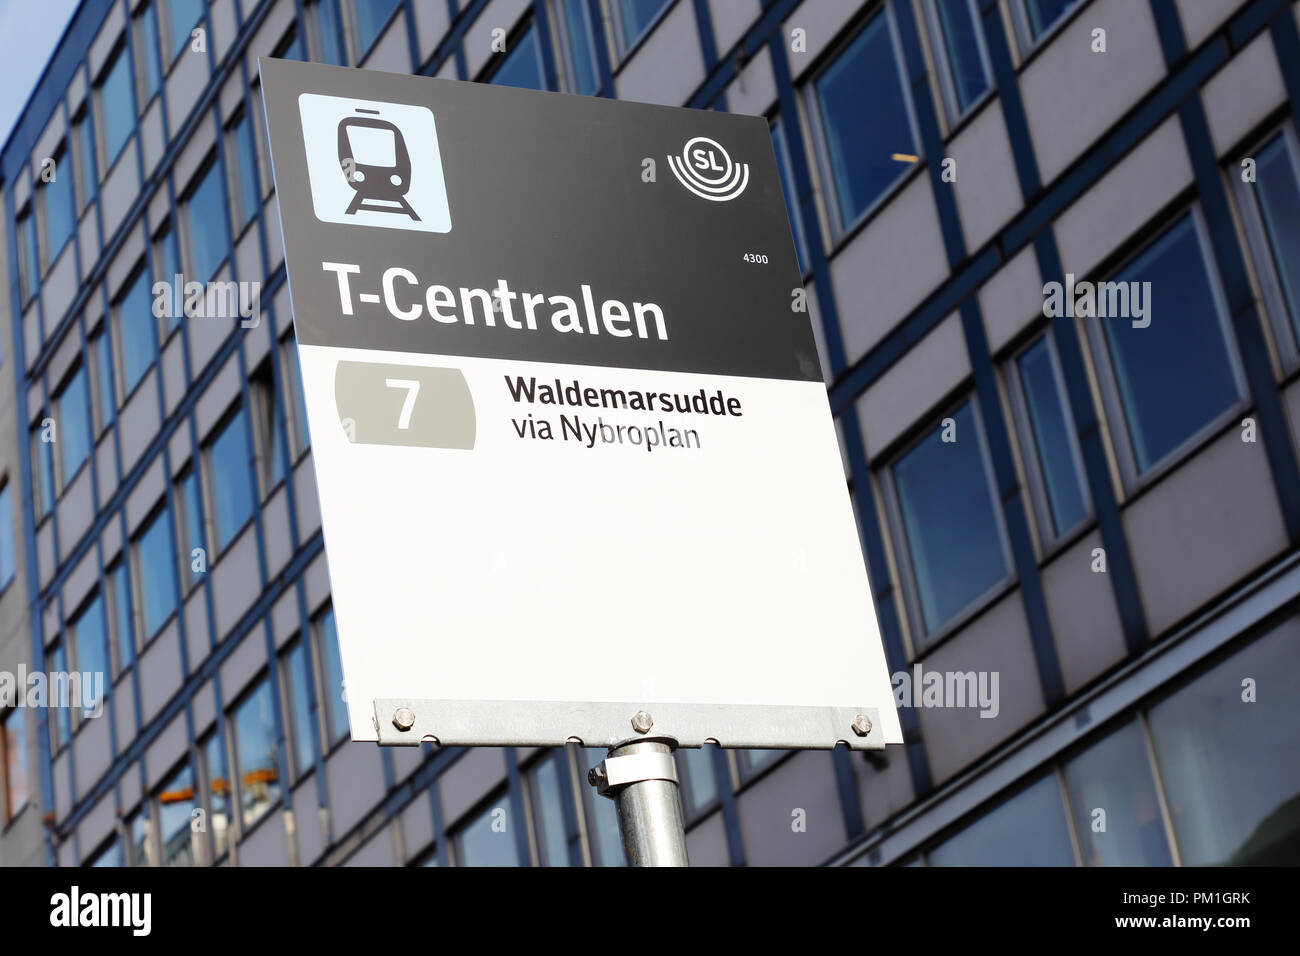 Stoccolma, Svezia - 13 Settembre 2018: chiusura del T-Centralen fermata del tram firmare azionato per mezzo di una linea 7 per la maggiore a Stoccolma il trasporto pubblico, SL. Foto Stock